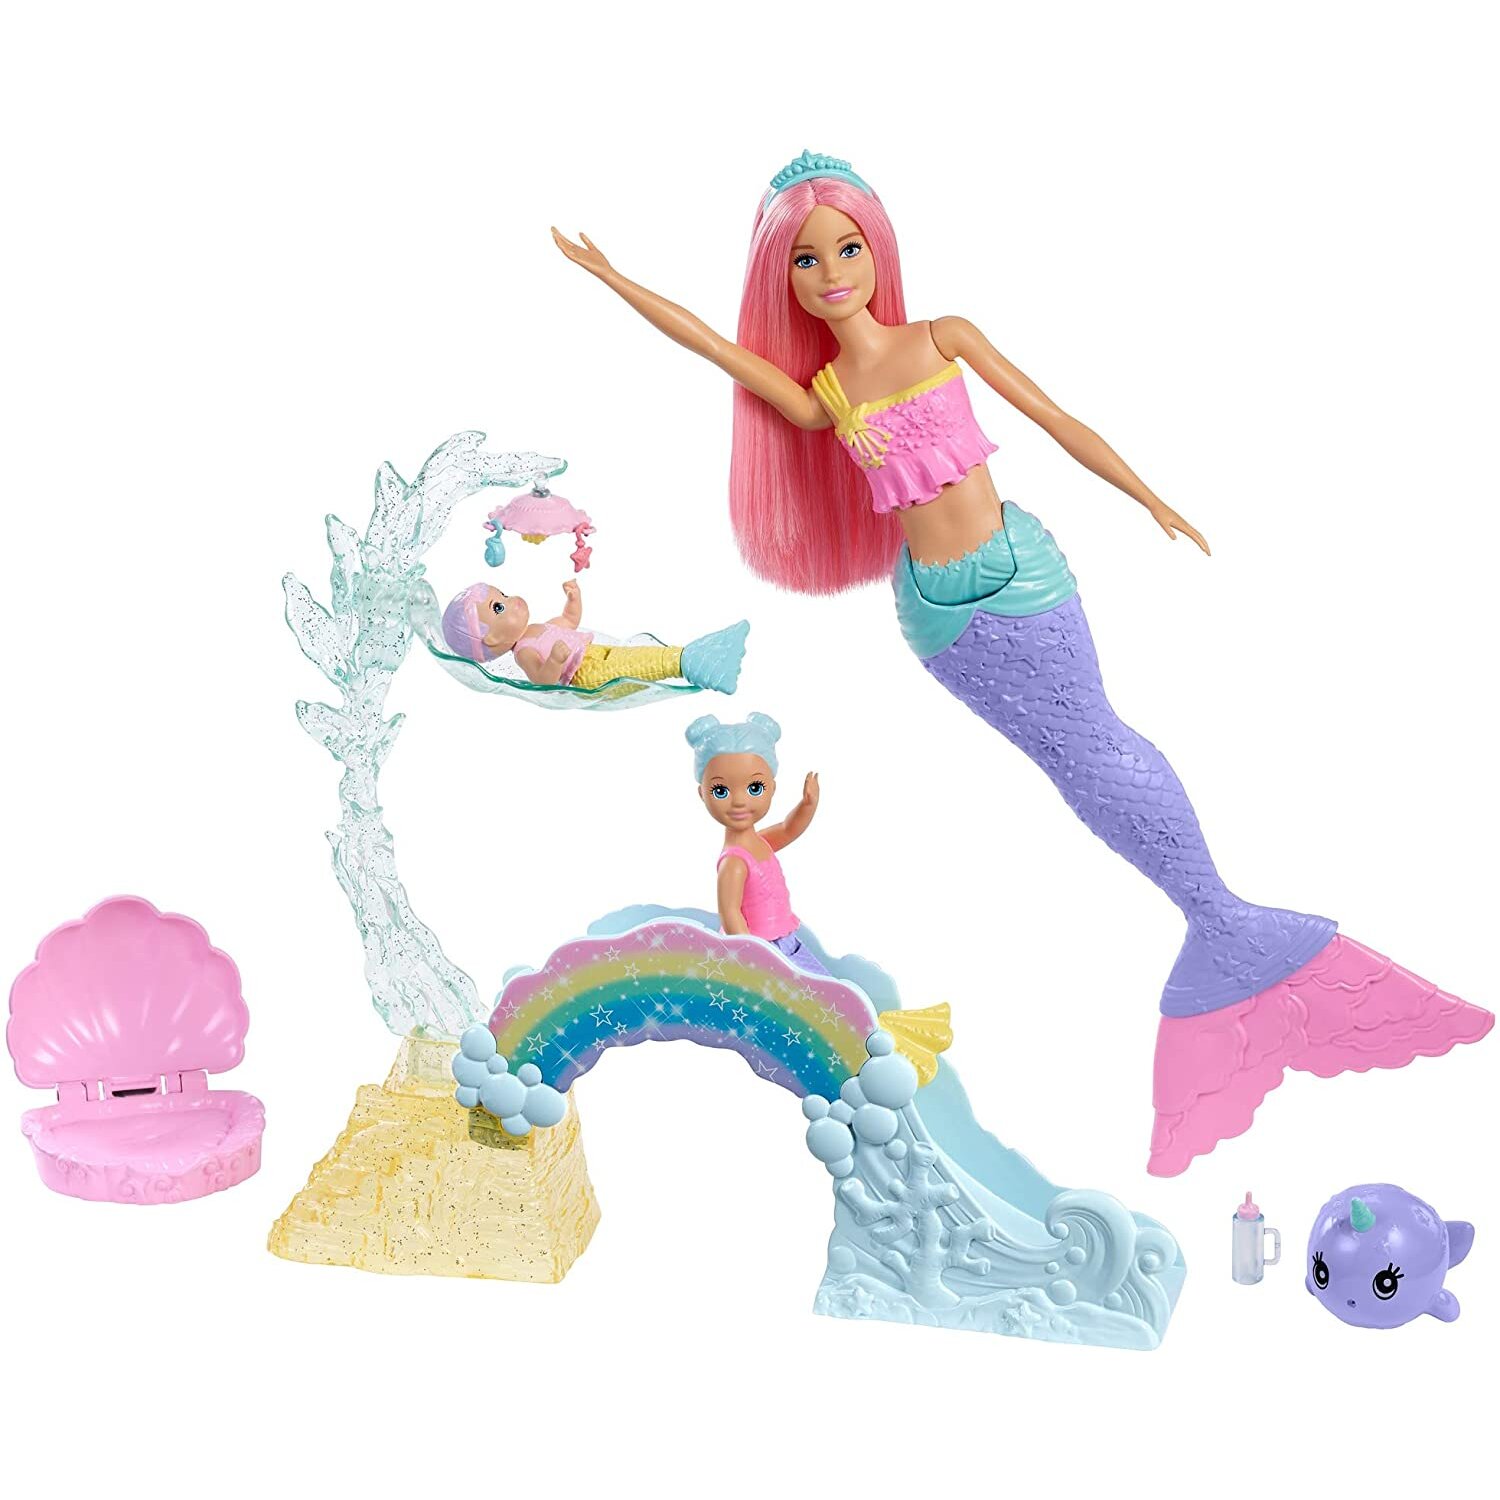 Barbie Dreamtopia Mermaid Nursery Playset with Mermaid Doll, Toddler and Baby Mermaid Dolls